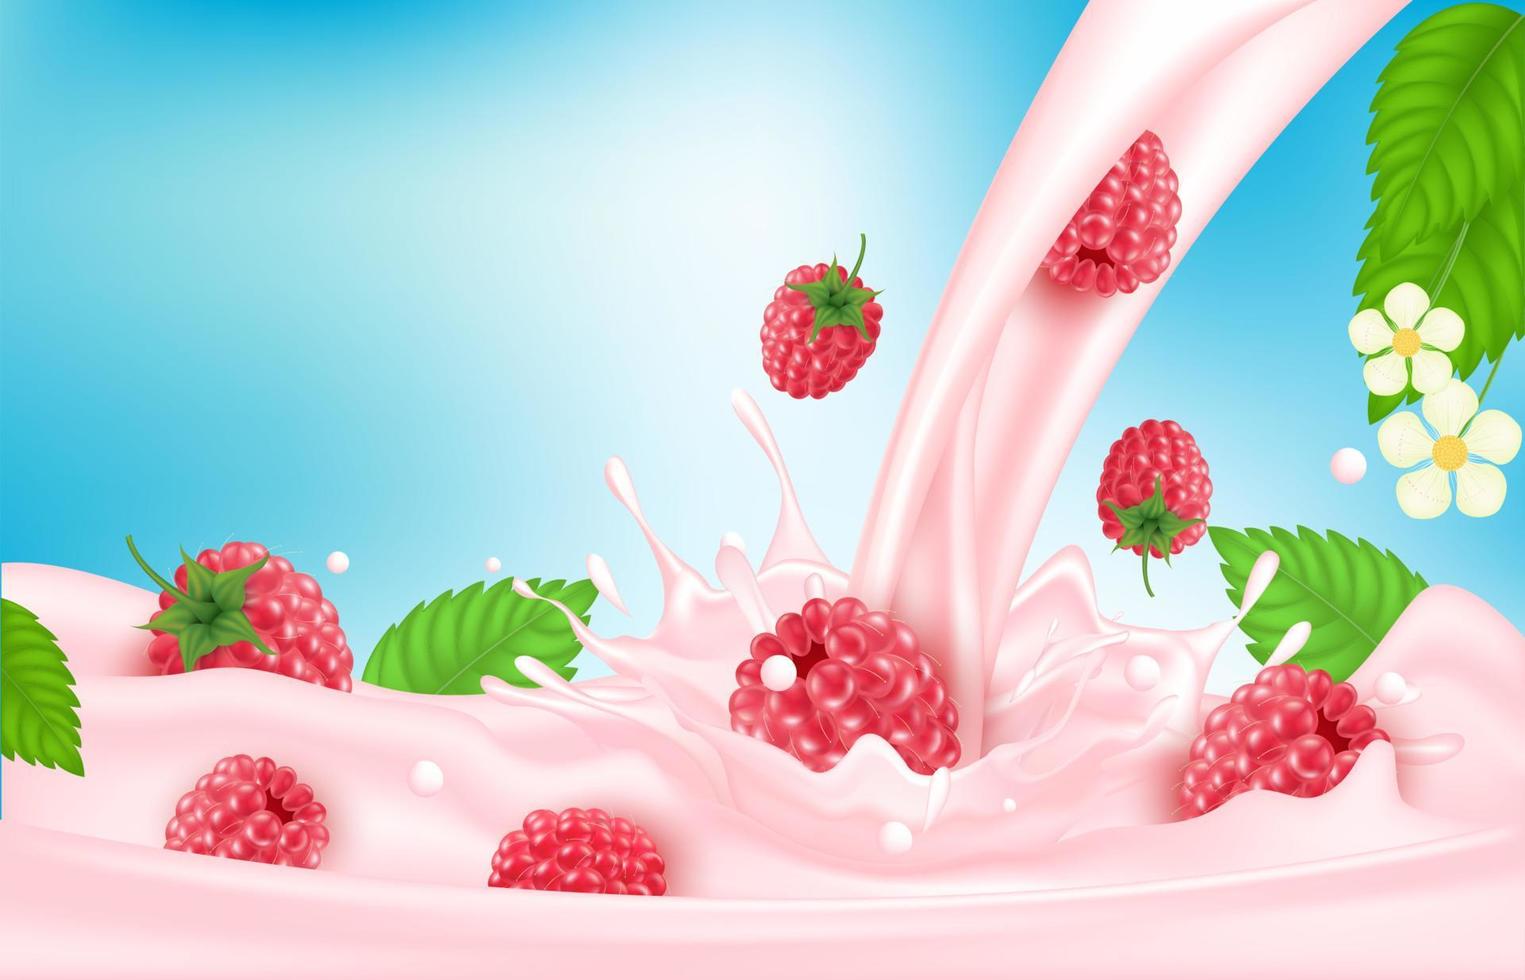 hallon söt rosa mjölk med bär och stänk realistiska, frukt och yoghurt. vektor 3d illustration.